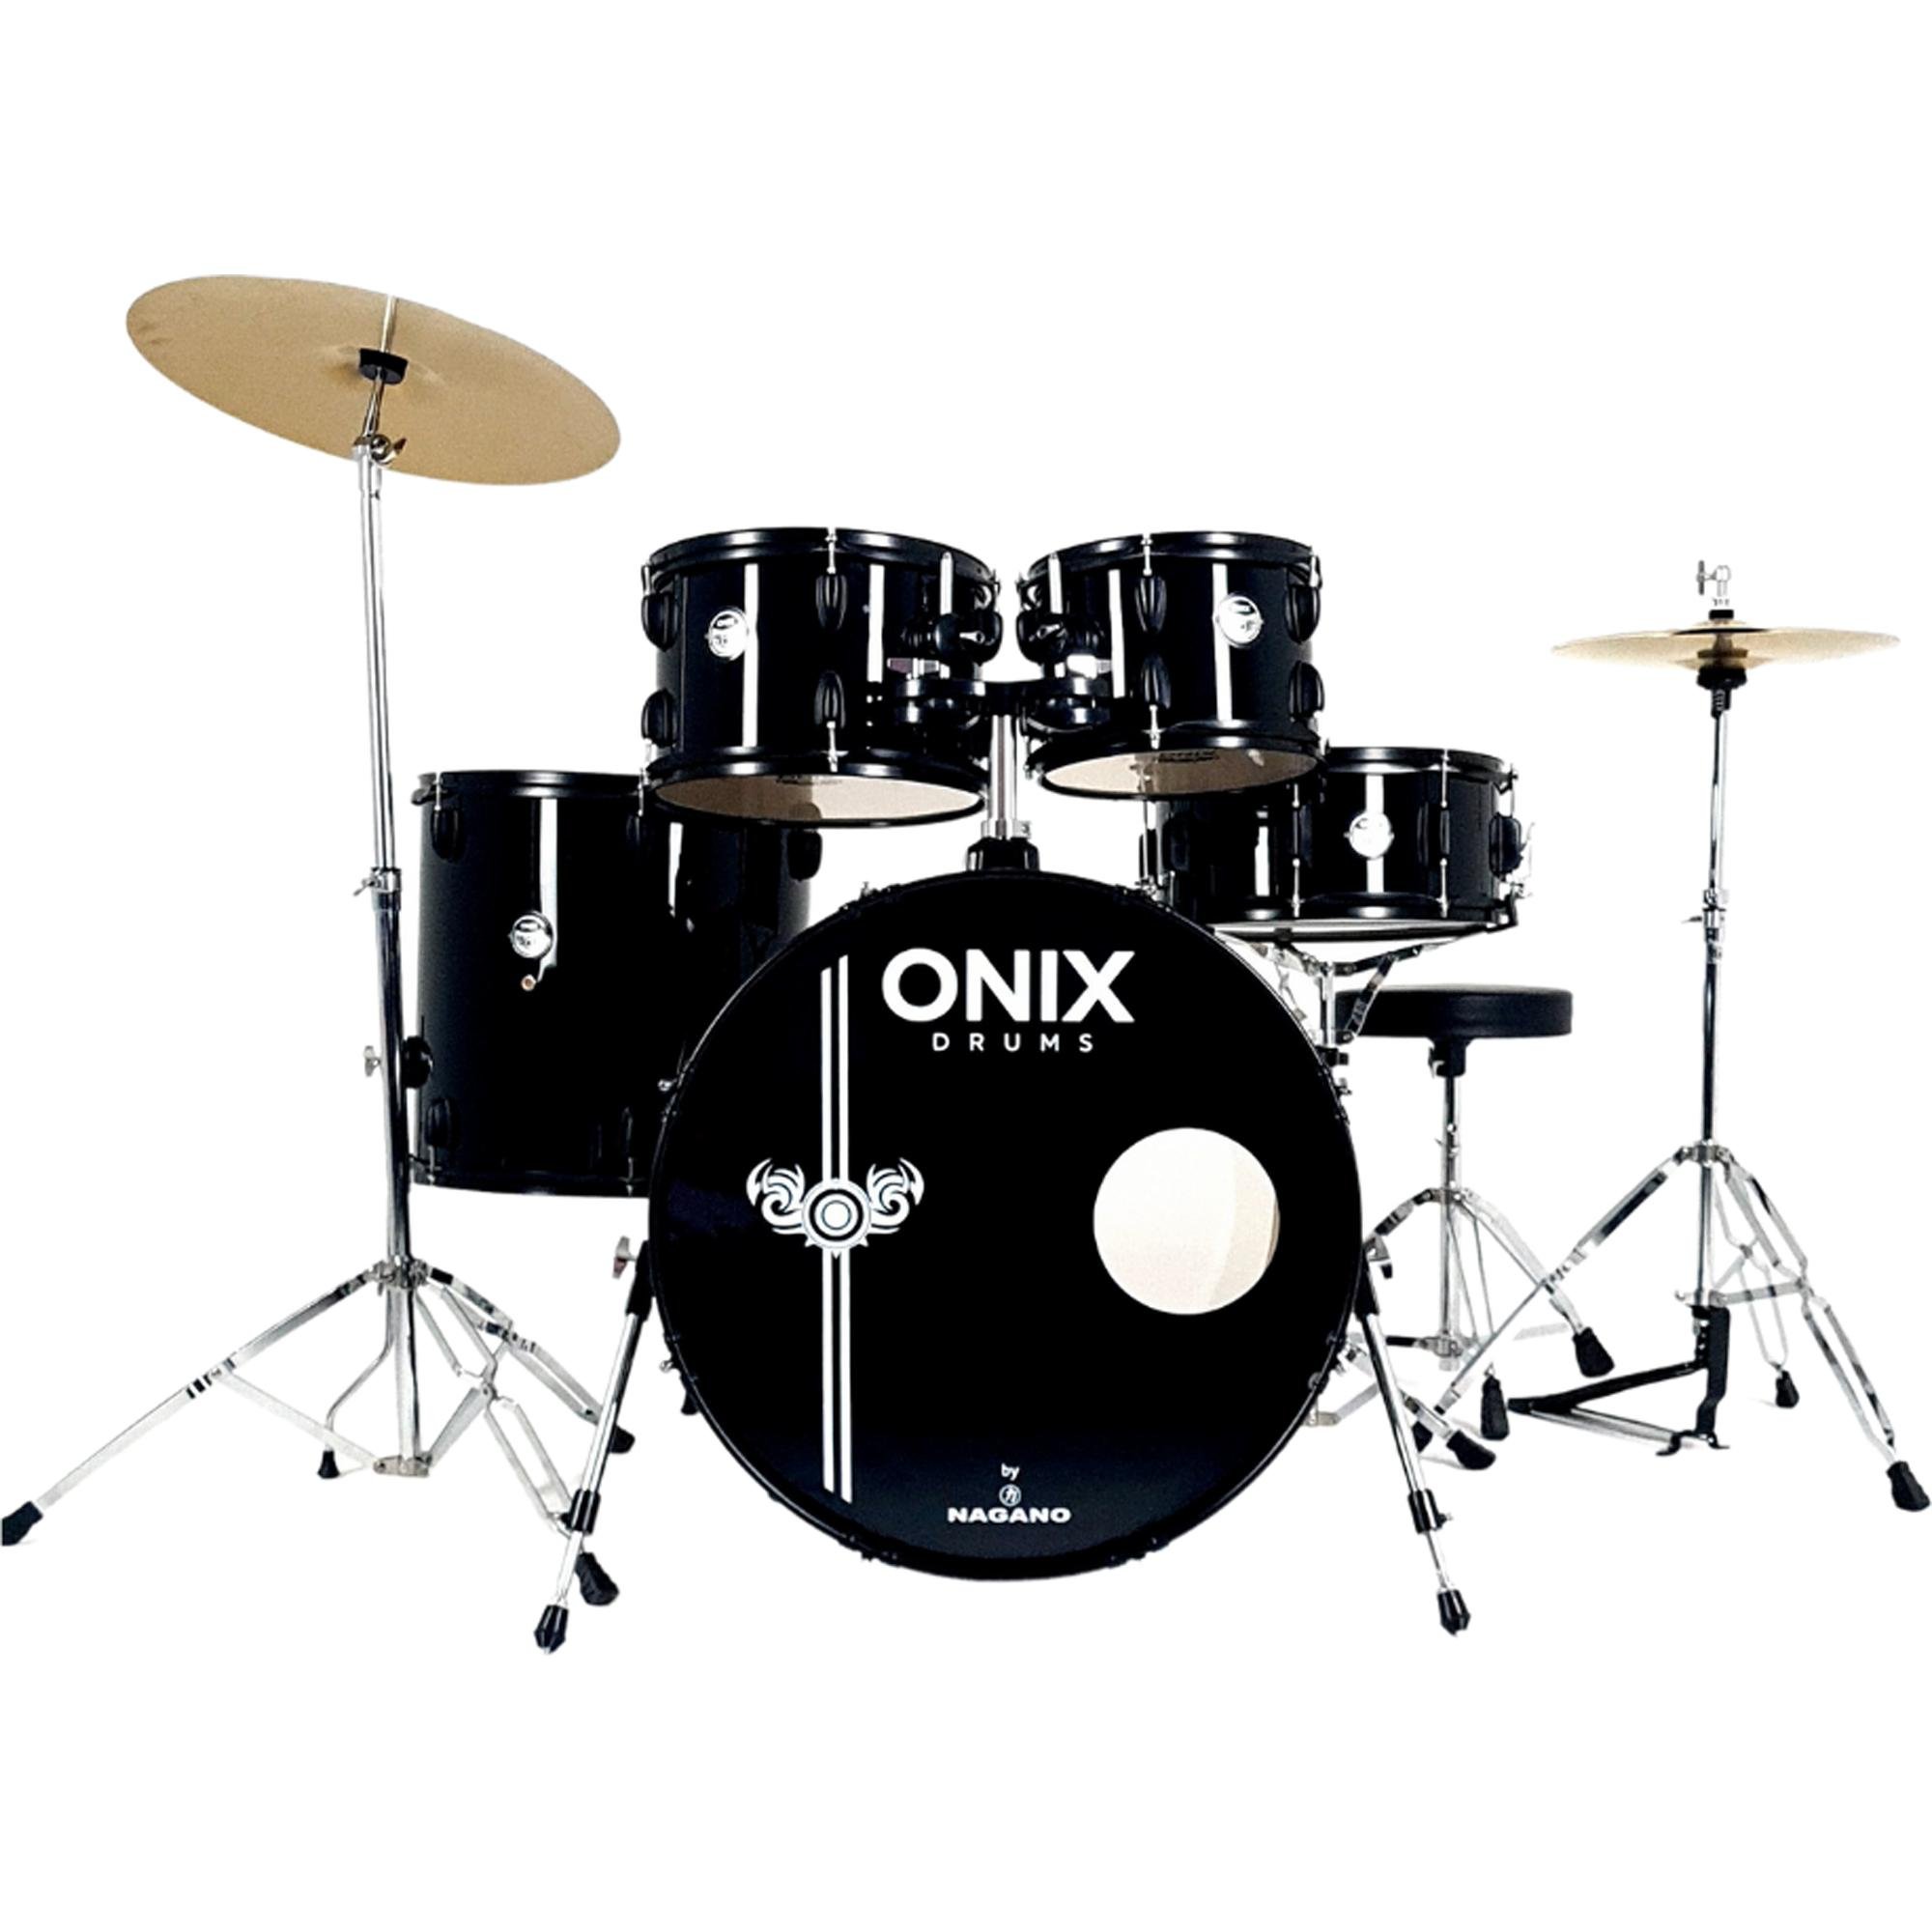 Bateria Acústica Nagano Onix Drums Smart 20\